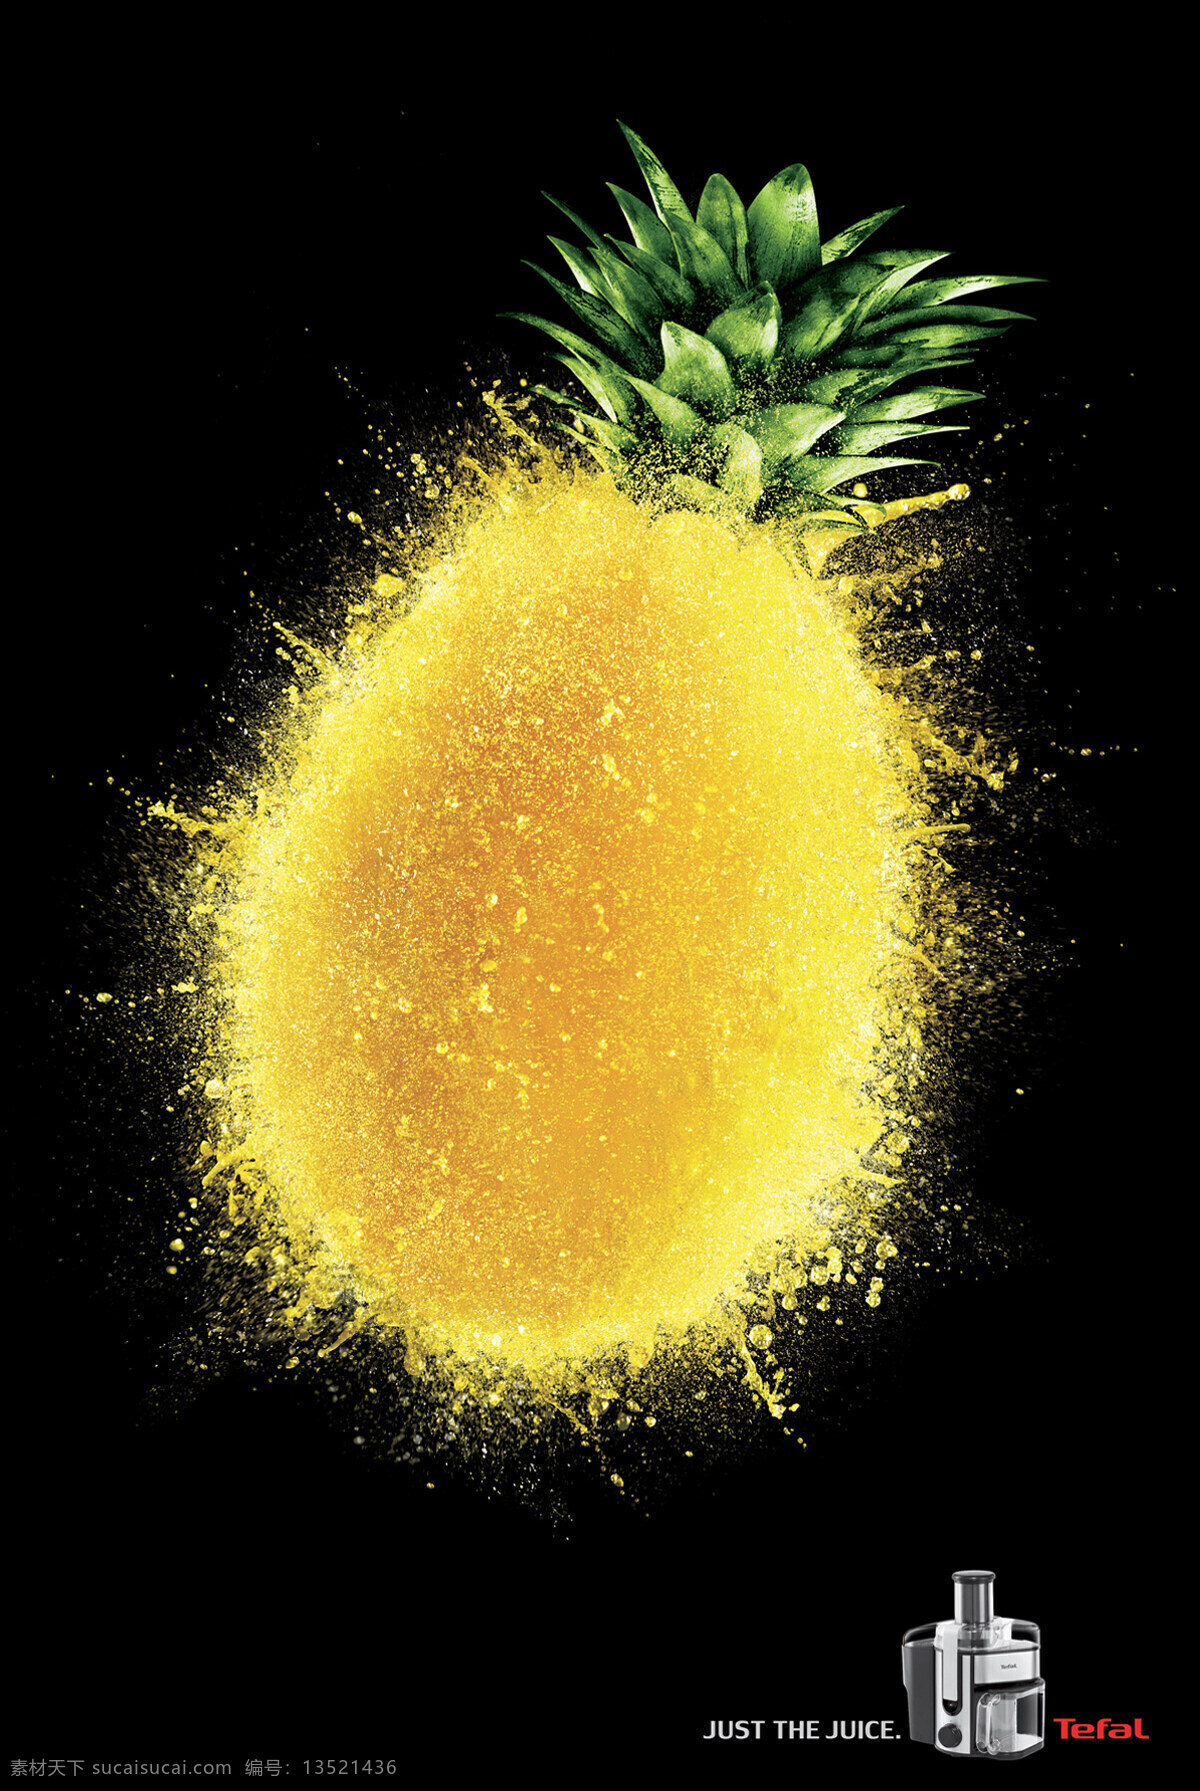 爆炸 菠萝 创意广告 果汁 水果忍者 榨汁机 水果 忍 创意 广告 模板下载 psd源文件